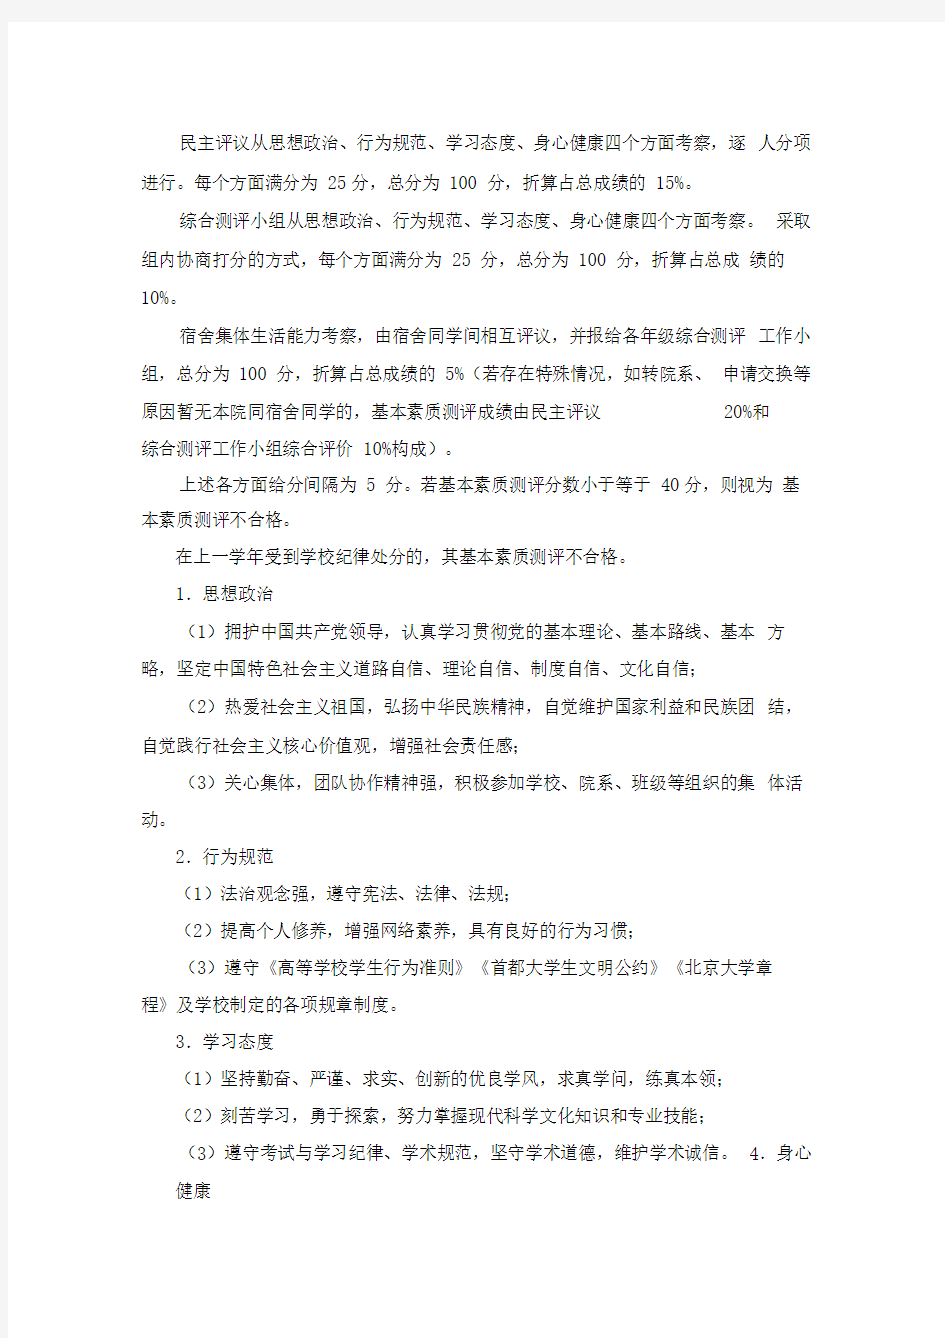 北京大学国际关系学院学生素质综合测评办法实施细则